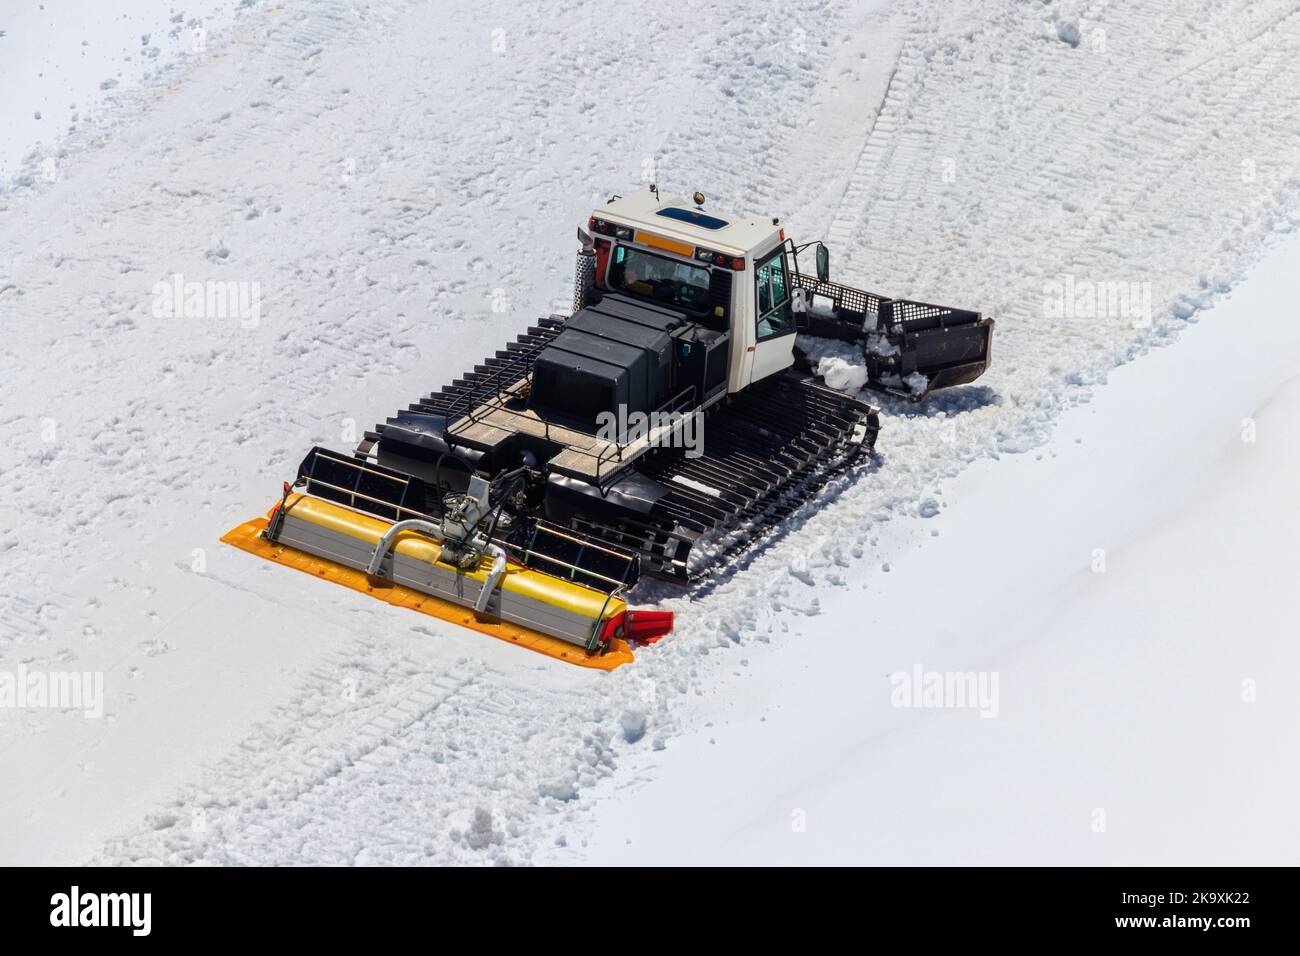 Gatto delle nevi, macchina per la rimozione della neve, preparazione di piste da sci, gommatore di neve Foto Stock